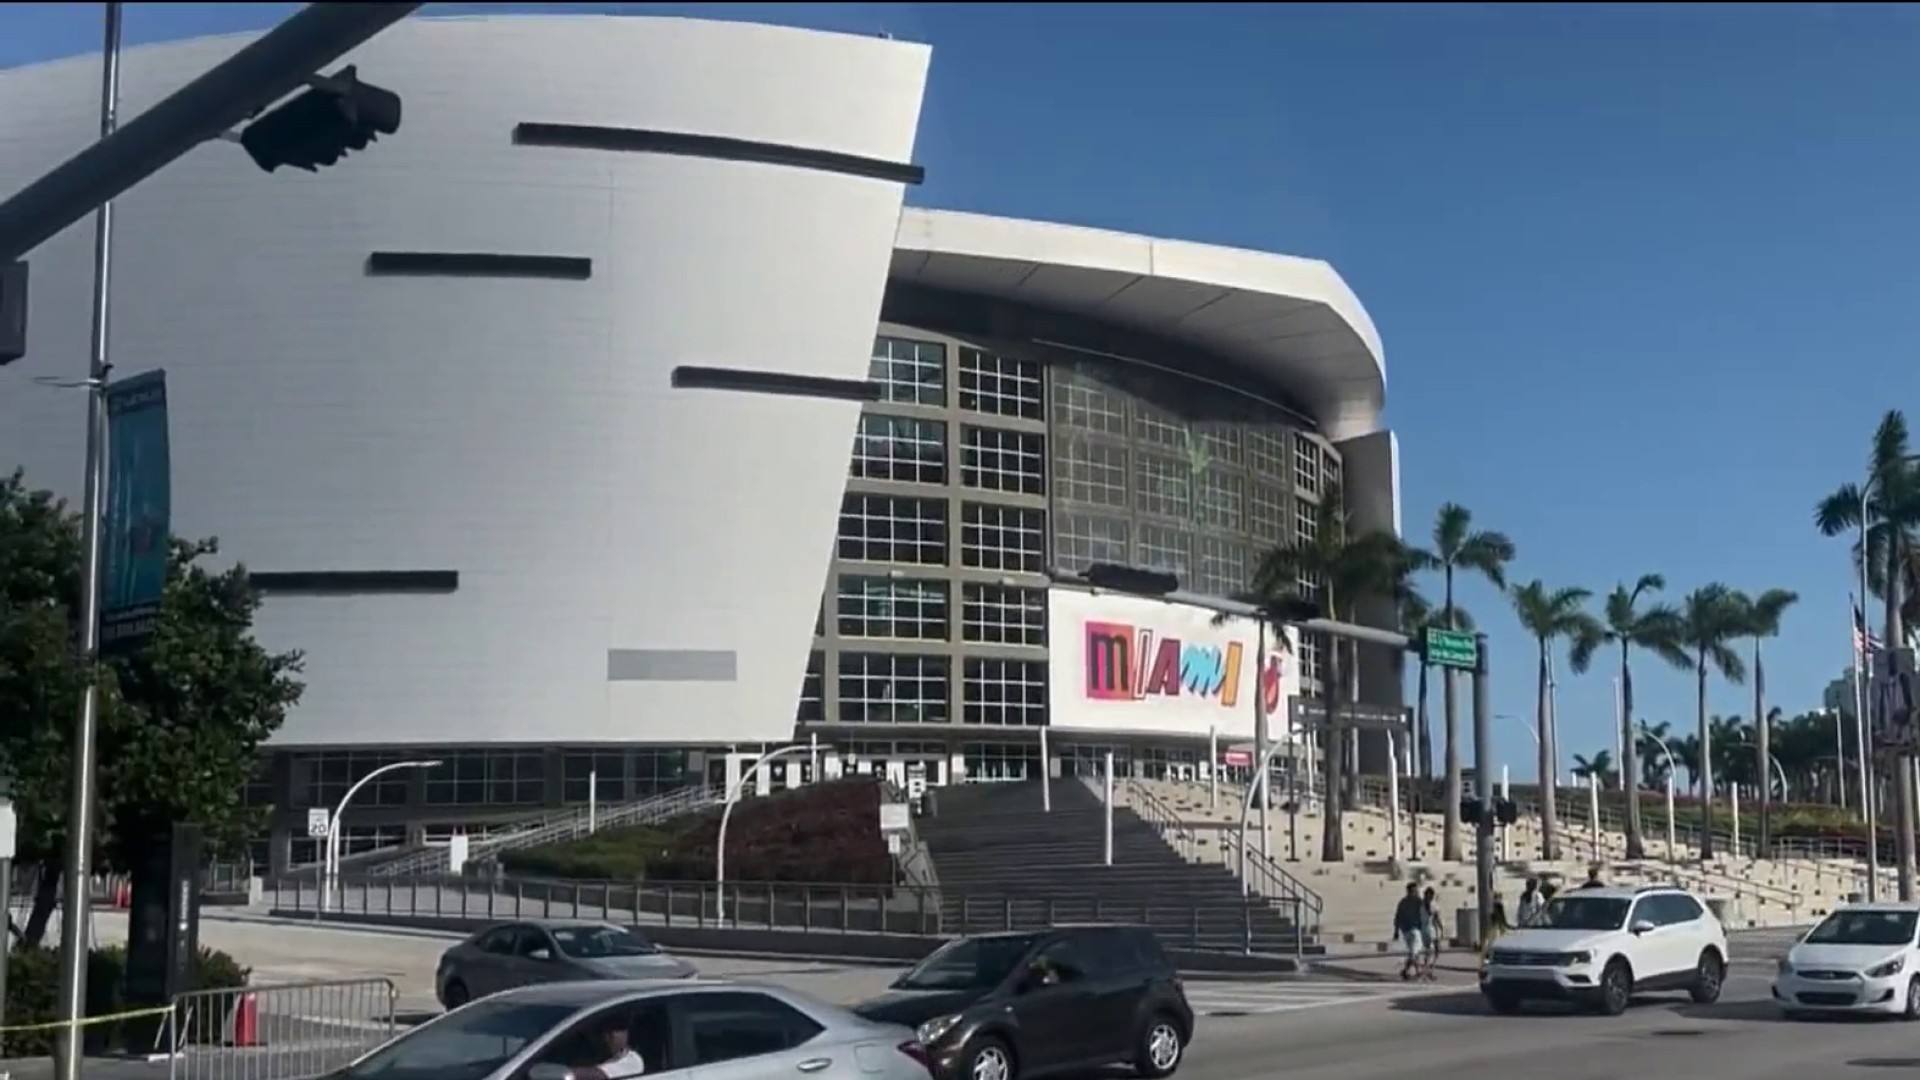 Miami Heat's arena name change; now known as Kaseya Center